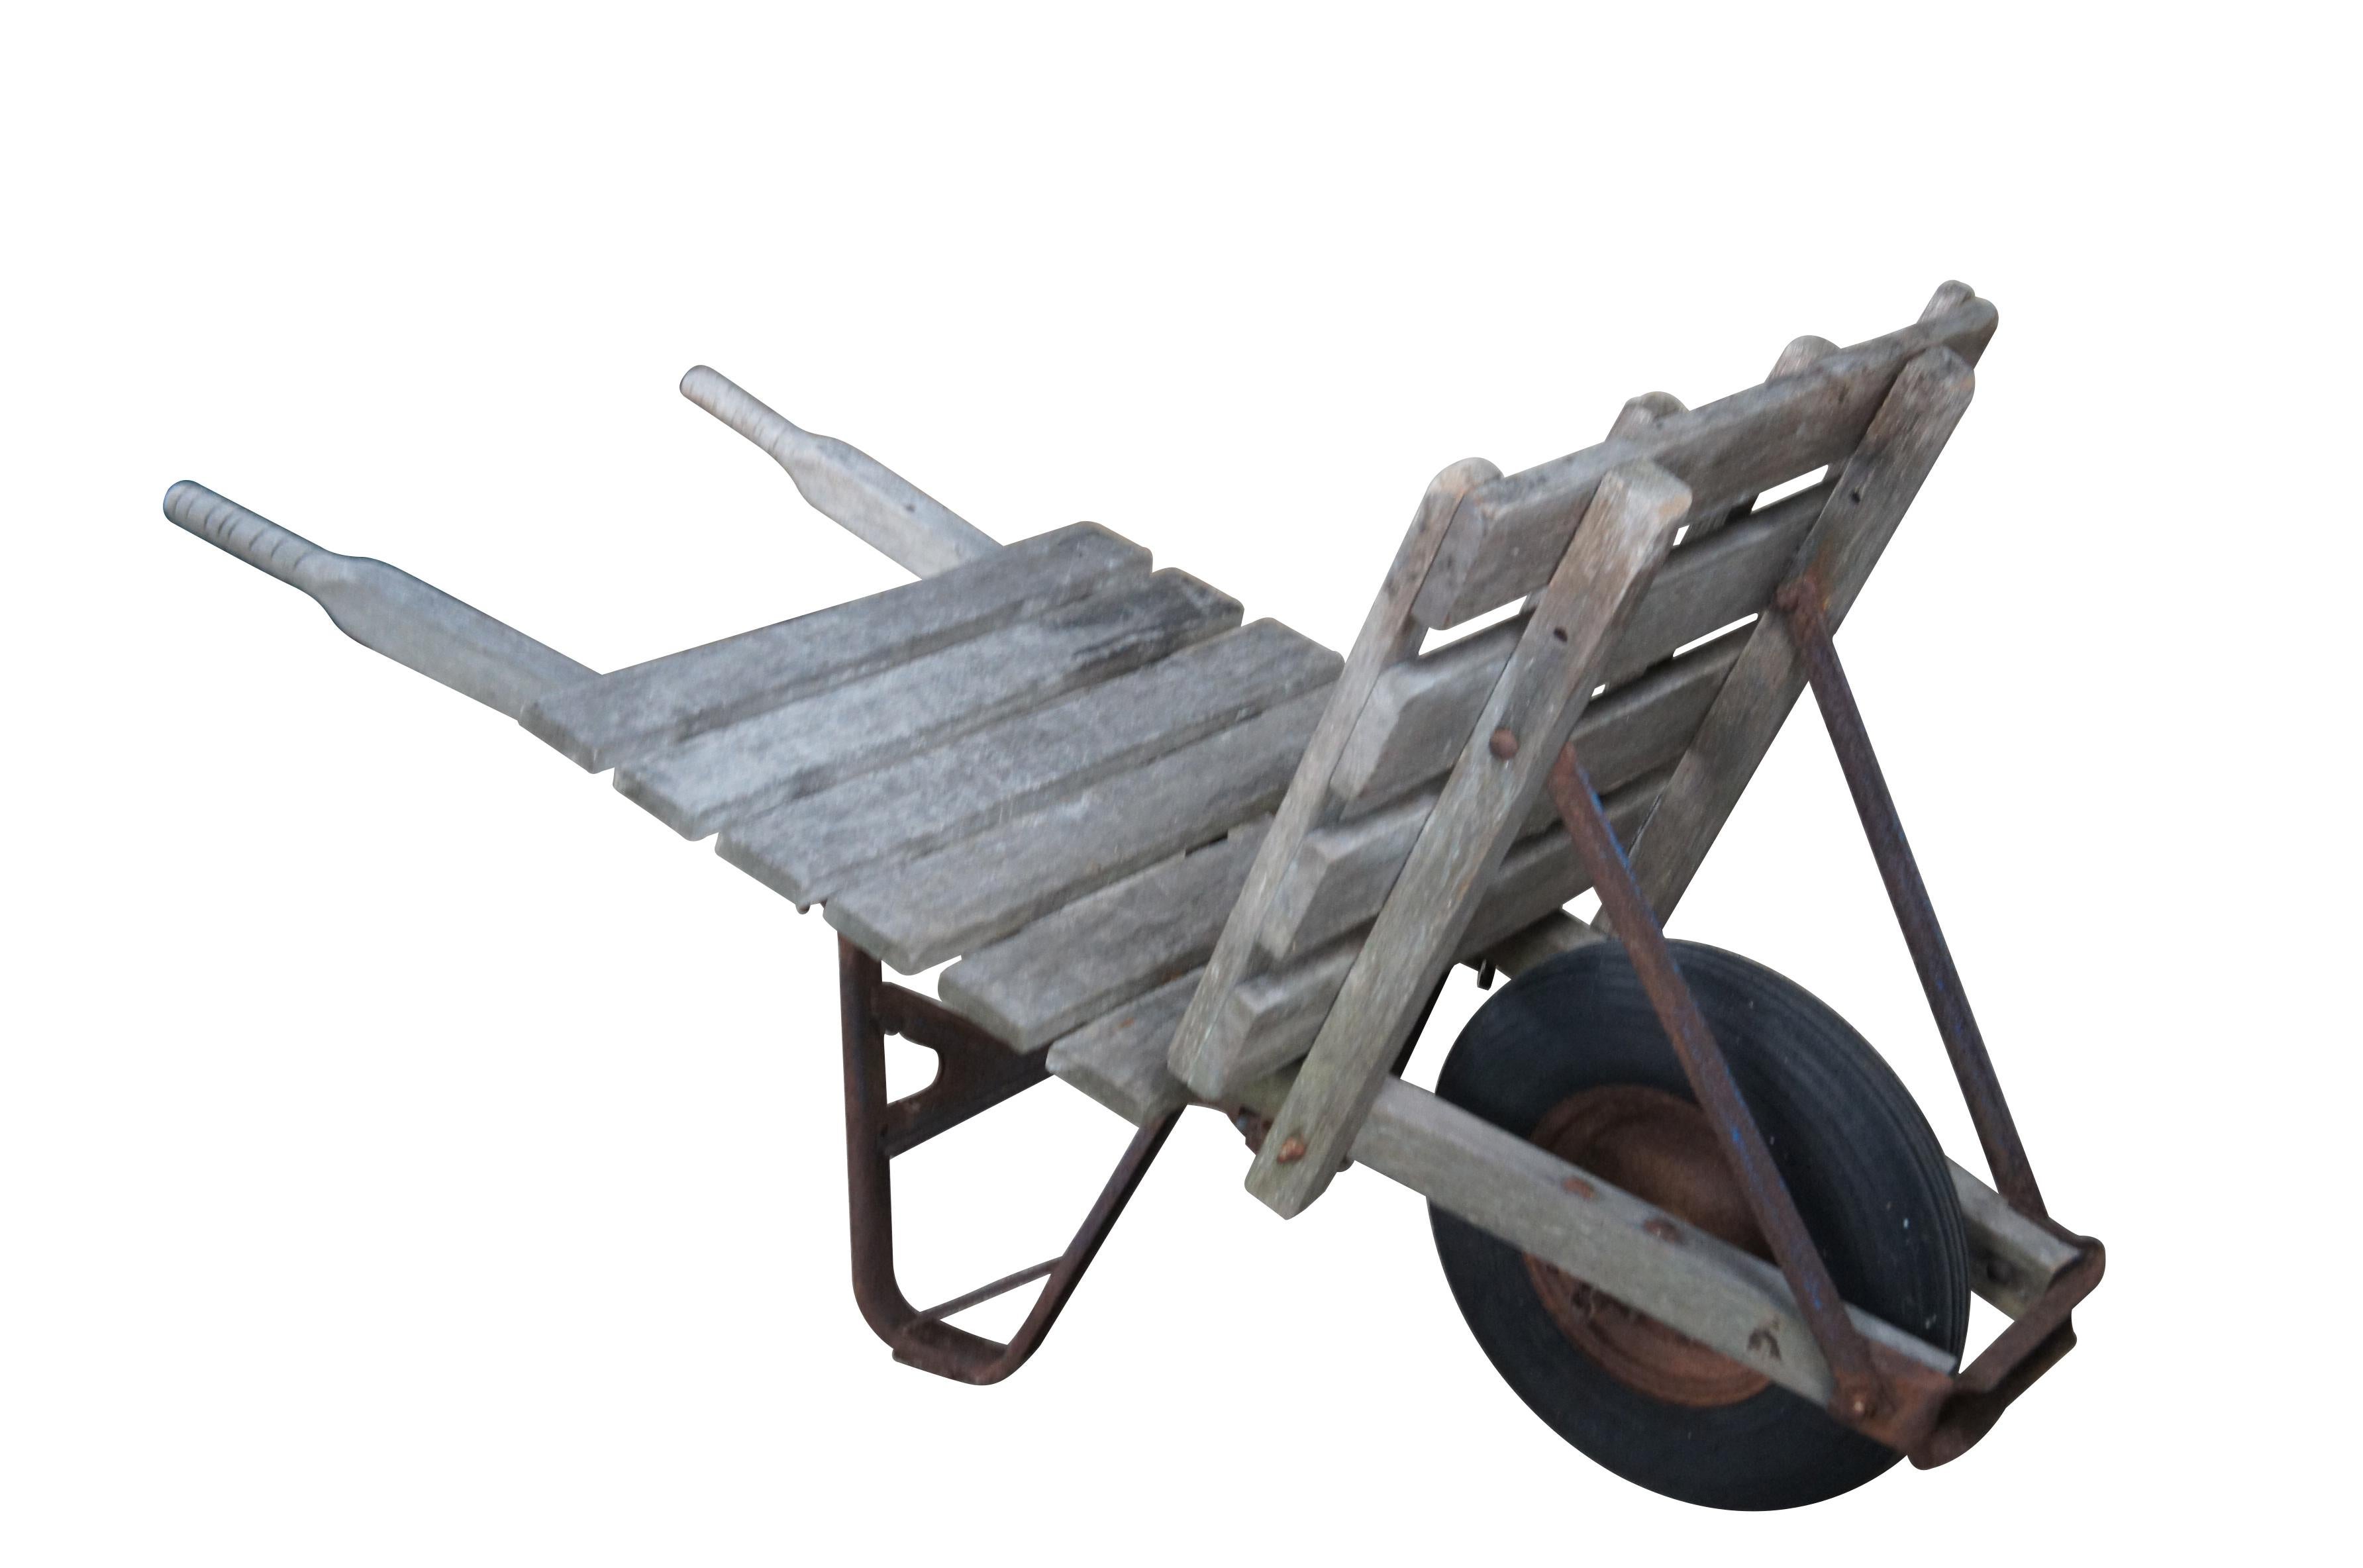 1940er Jahre Flachbett-Schubkarre.  Bestimmt für Ziegel oder Heu.  Mit einem Holzrahmen auf Rädern mit Metallstütze.  

Abmessungen:
61